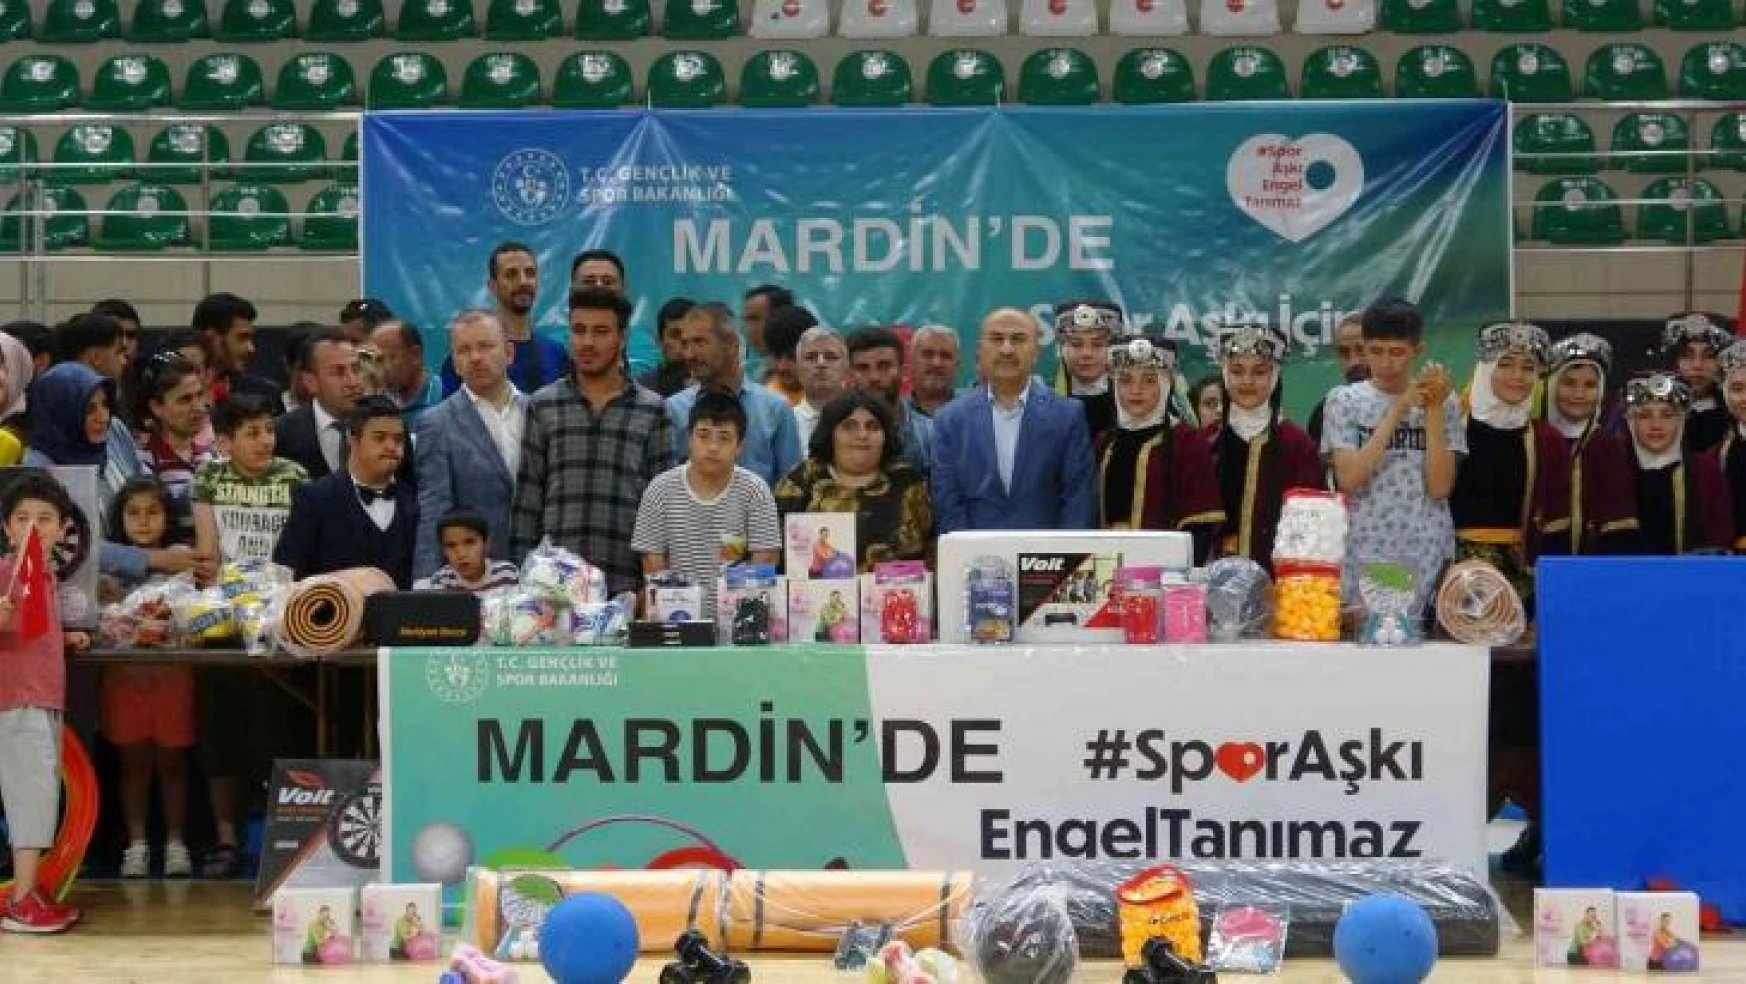 Mardin'de özel gereksinimli çocuklara spor malzemesi dağıtıldı